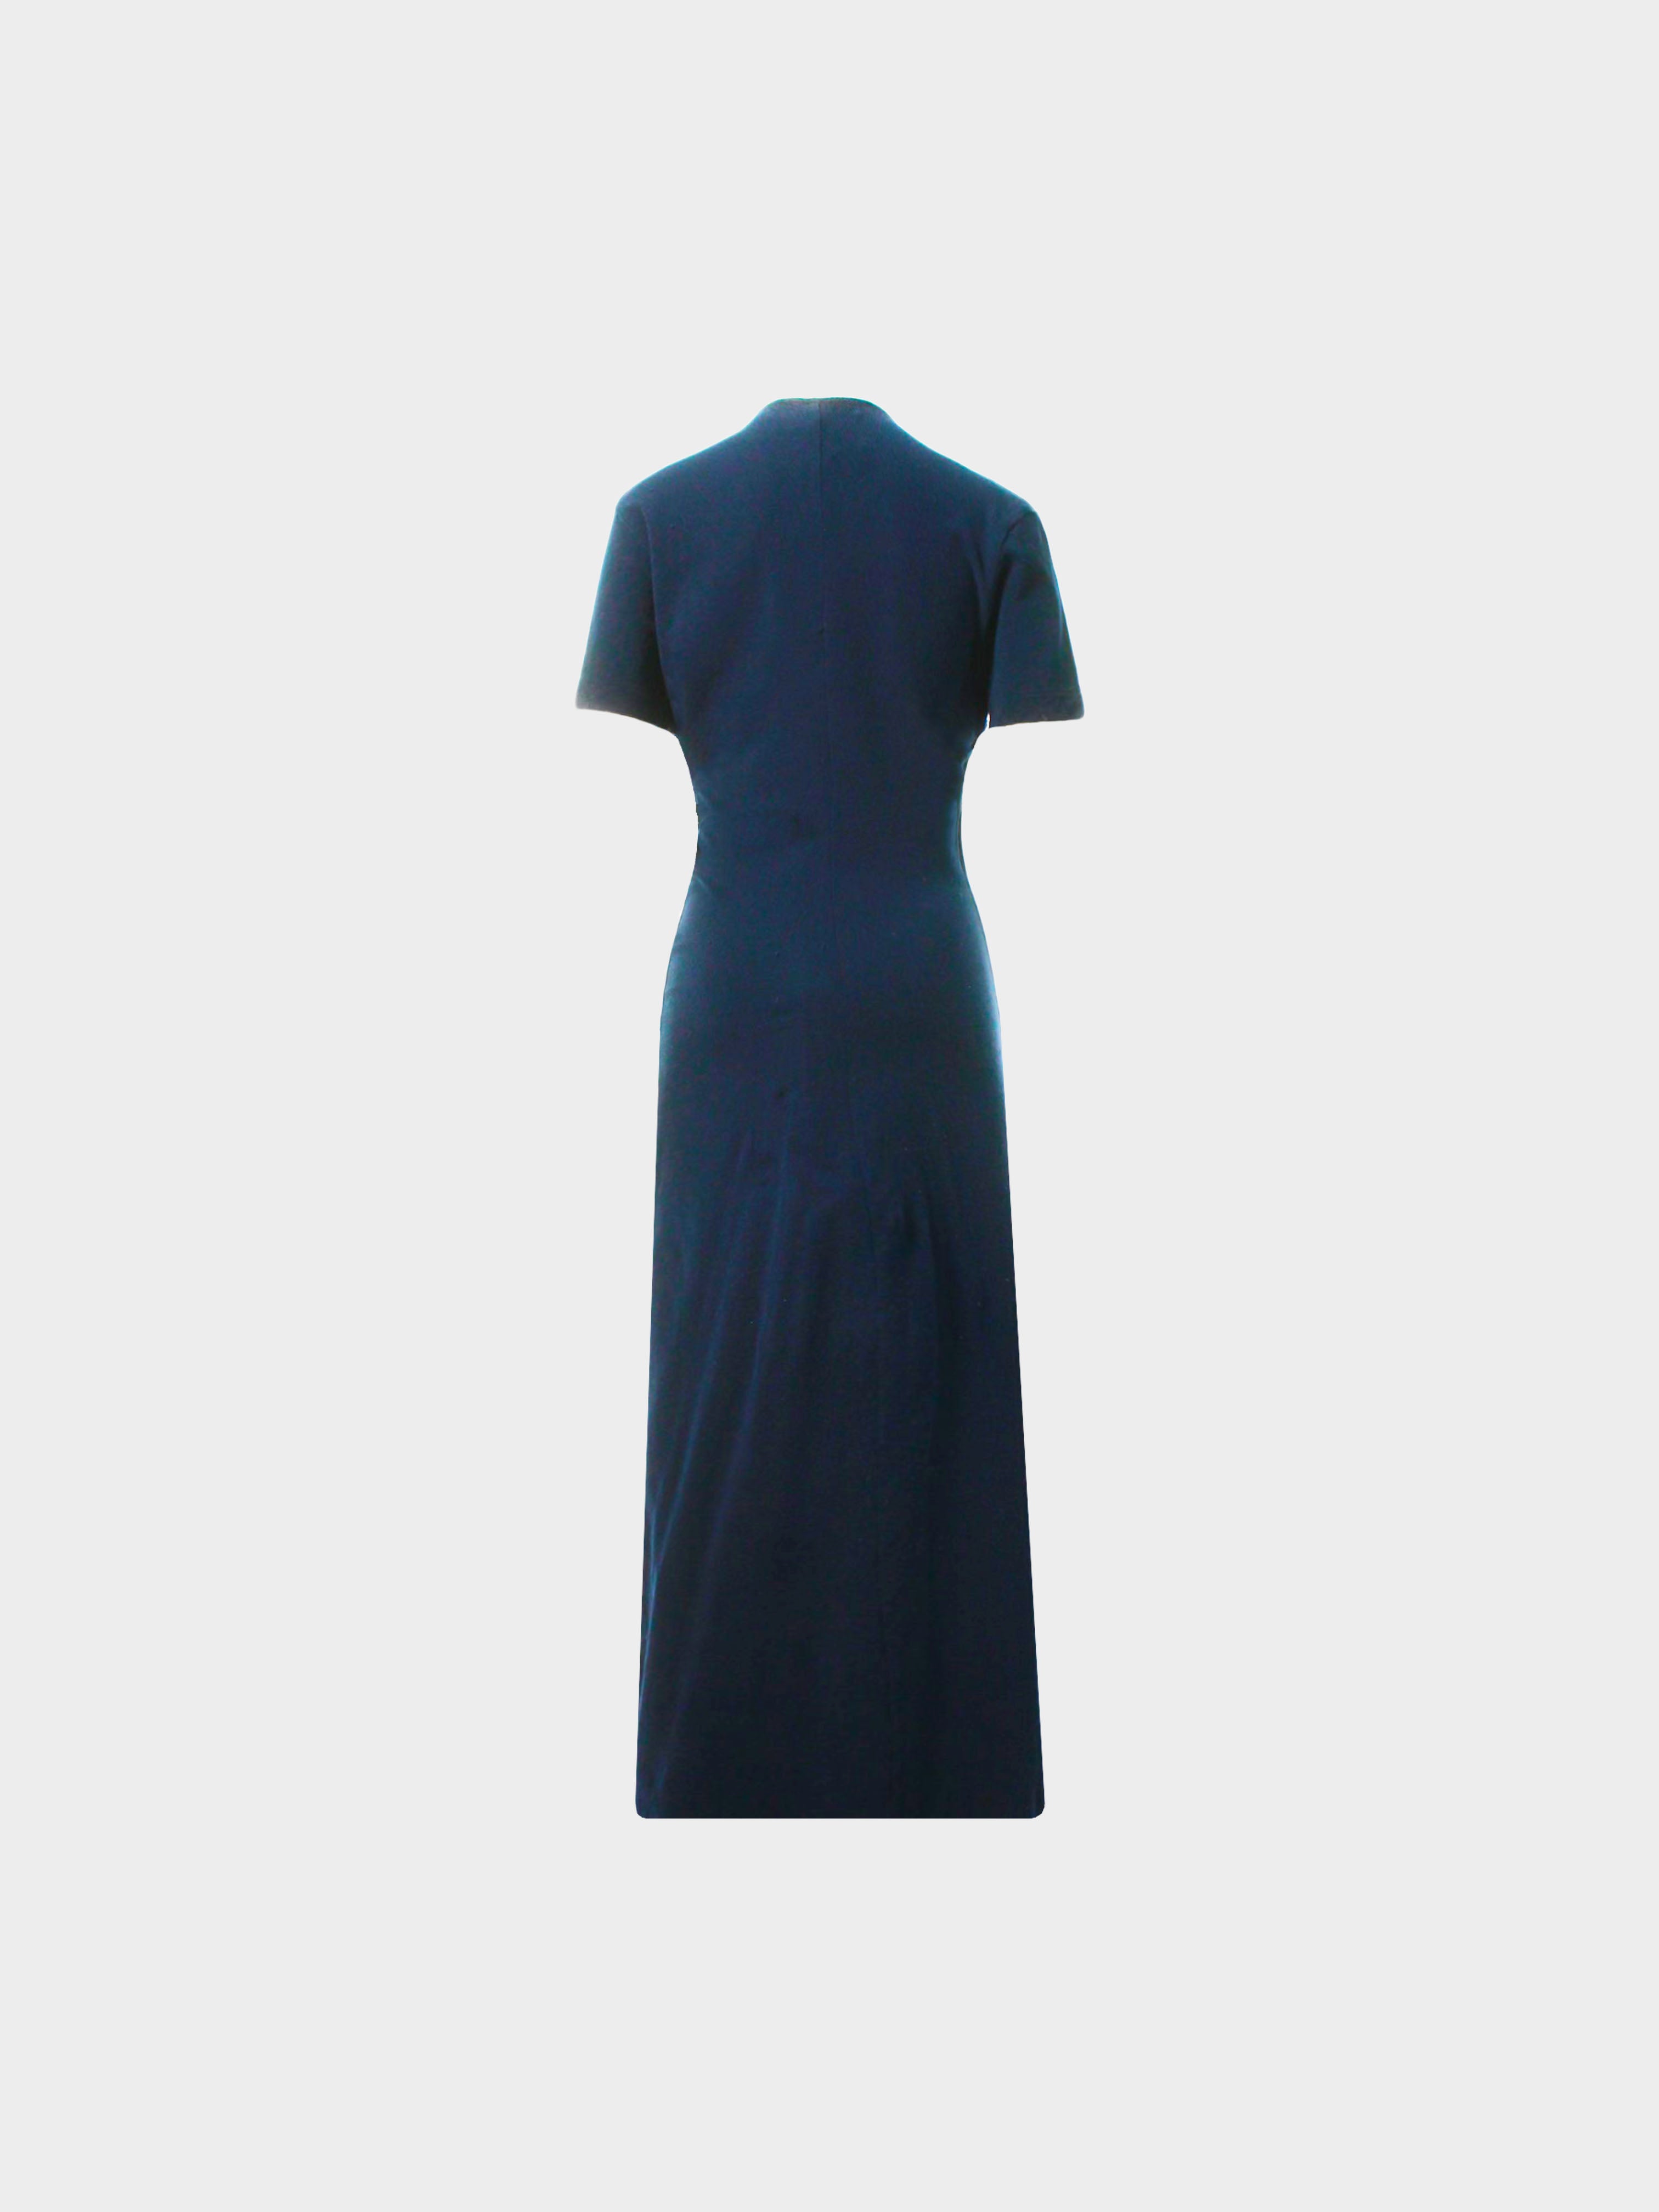 Comme des Garçons SS 1997 Navy Blue Long Dress